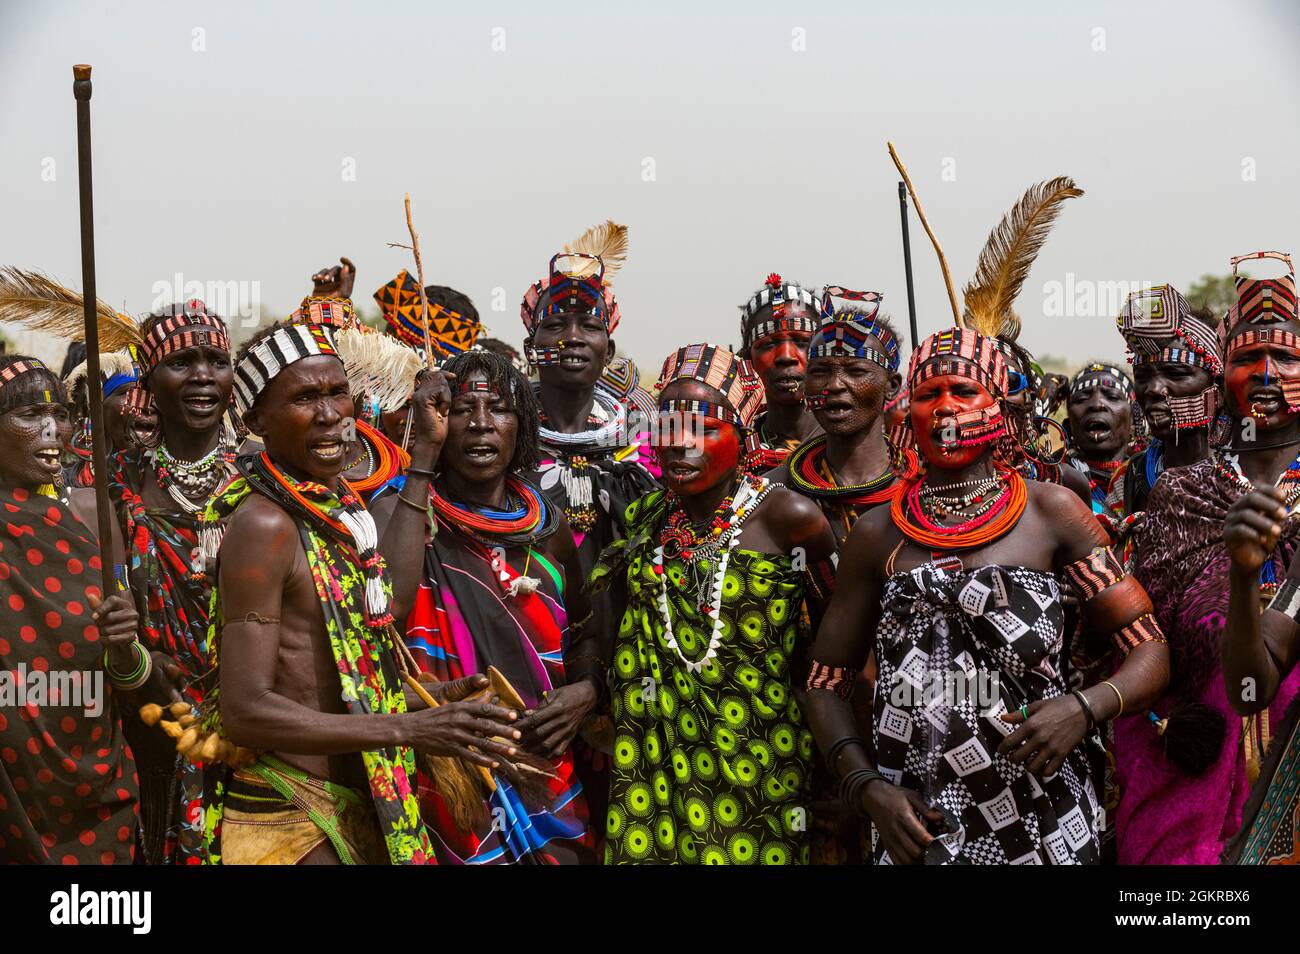 Traditionell gekleidete Frauen des Jiye-Stammes tanzen und singen, Eastern Equatoria State, Südsudan, Afrika Stockfoto